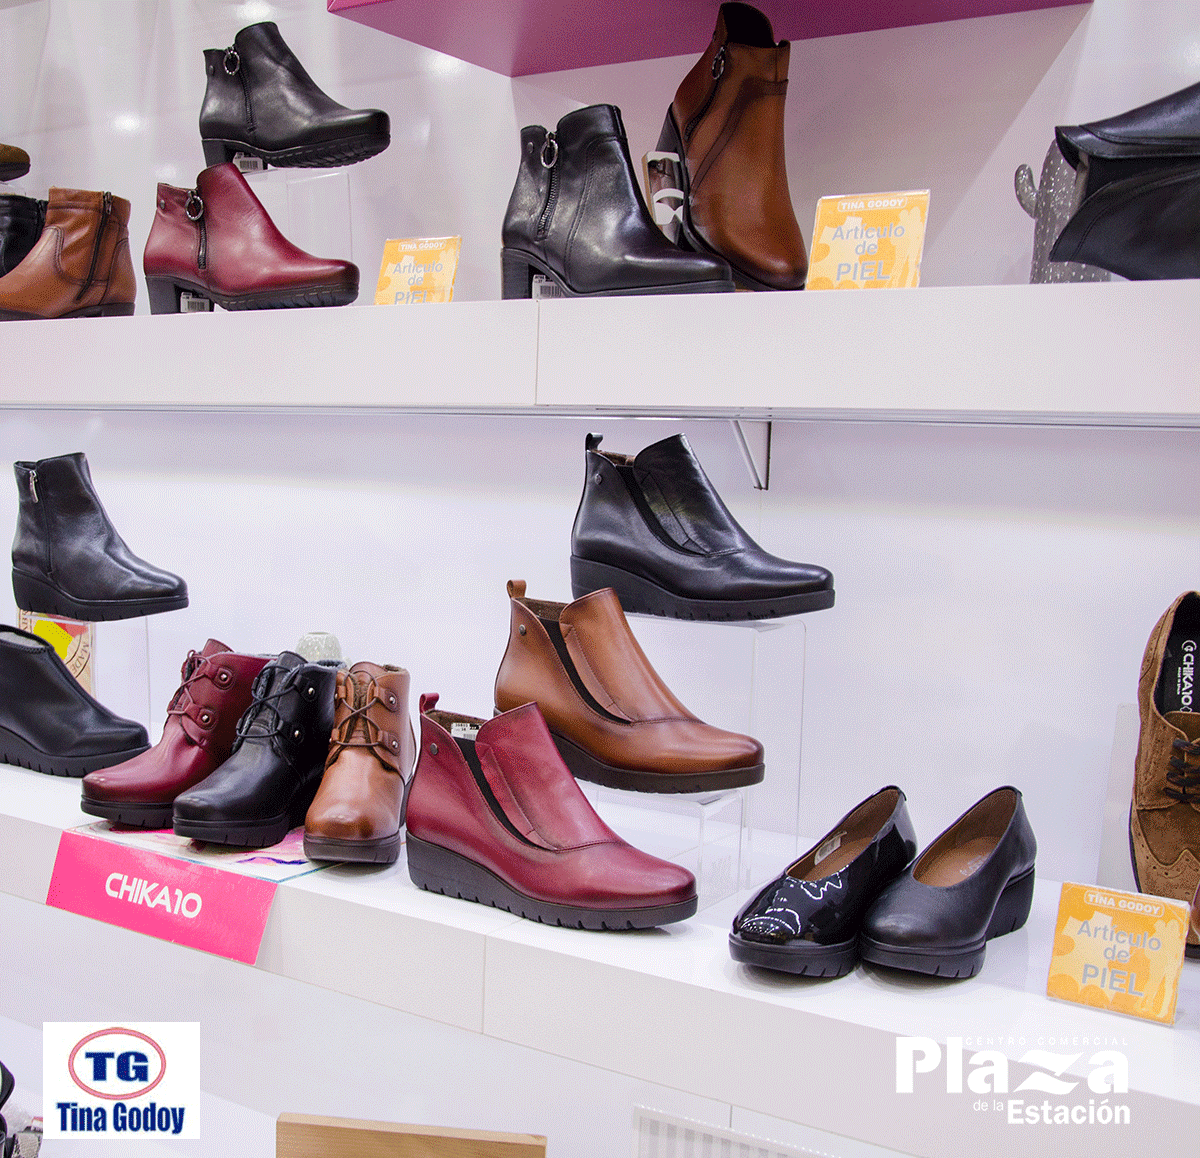 Plaza de Estación on Twitter: "👠👢¡Encuentra tendencias en moda y calzado en Zapaterías Tina Godoy ! ¡Ven a nuestra zapatería del #CentroPlazaDeLaEstación y descubre nuestra propia marca de zapatos #